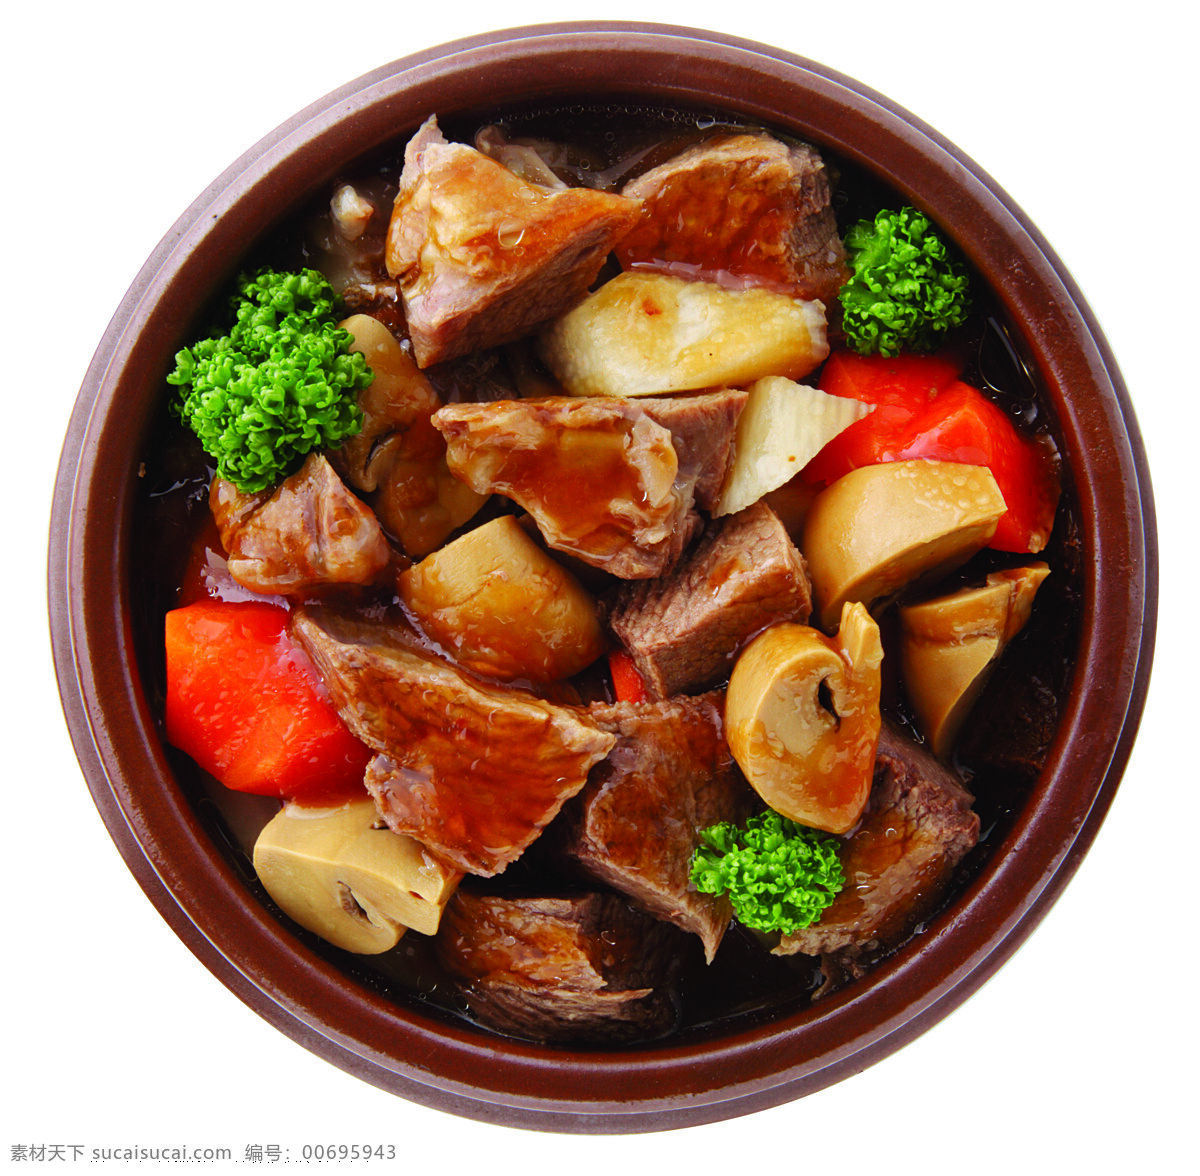 砂锅炖牛肉 砂锅 烧牛肉 炖牛肉 陕西菜 酒店菜品 菜单 菜品 传统美食 餐饮美食